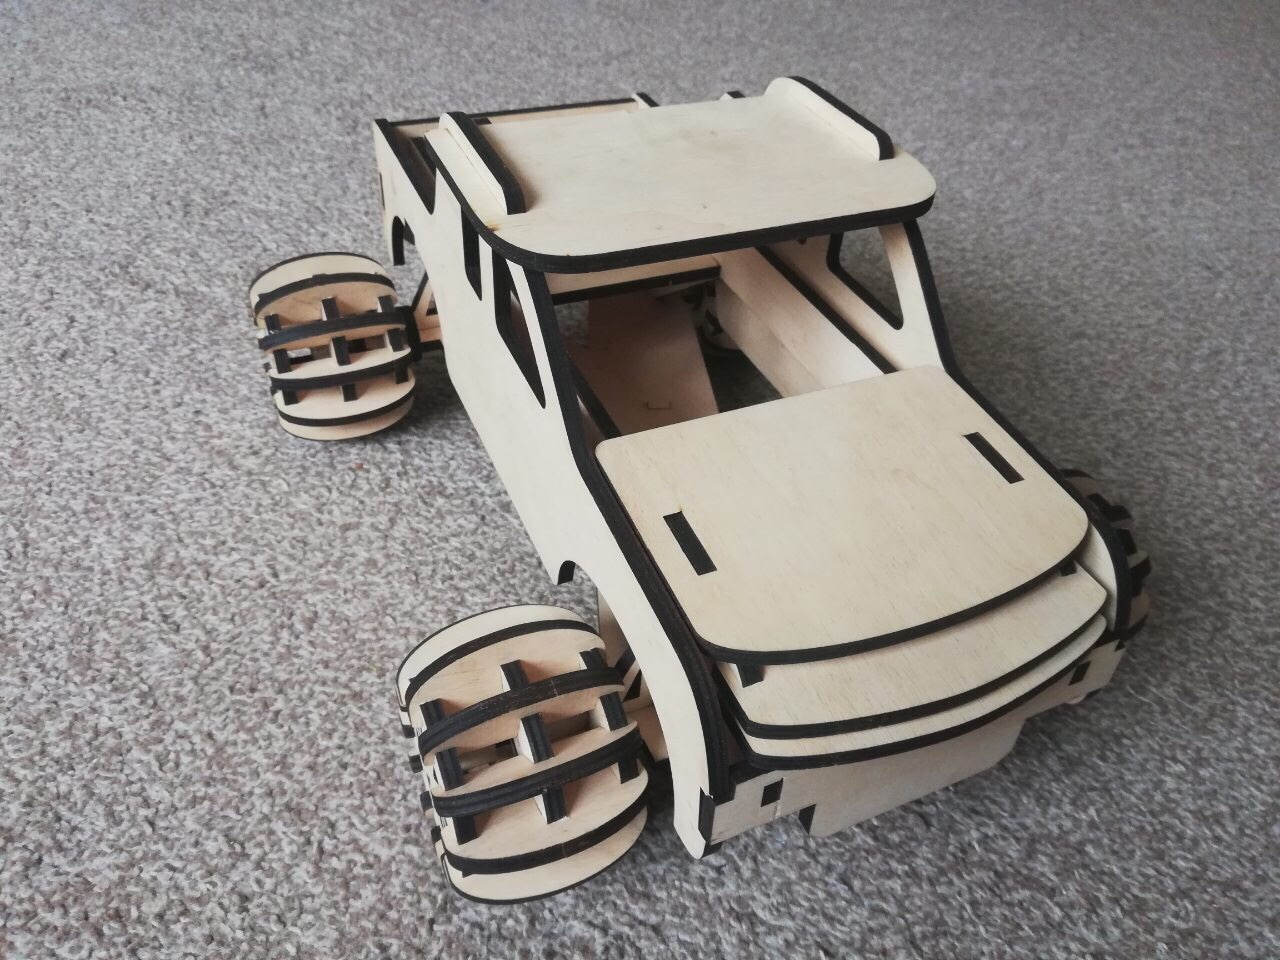 激光切割木制玩具卡车 3D 模型